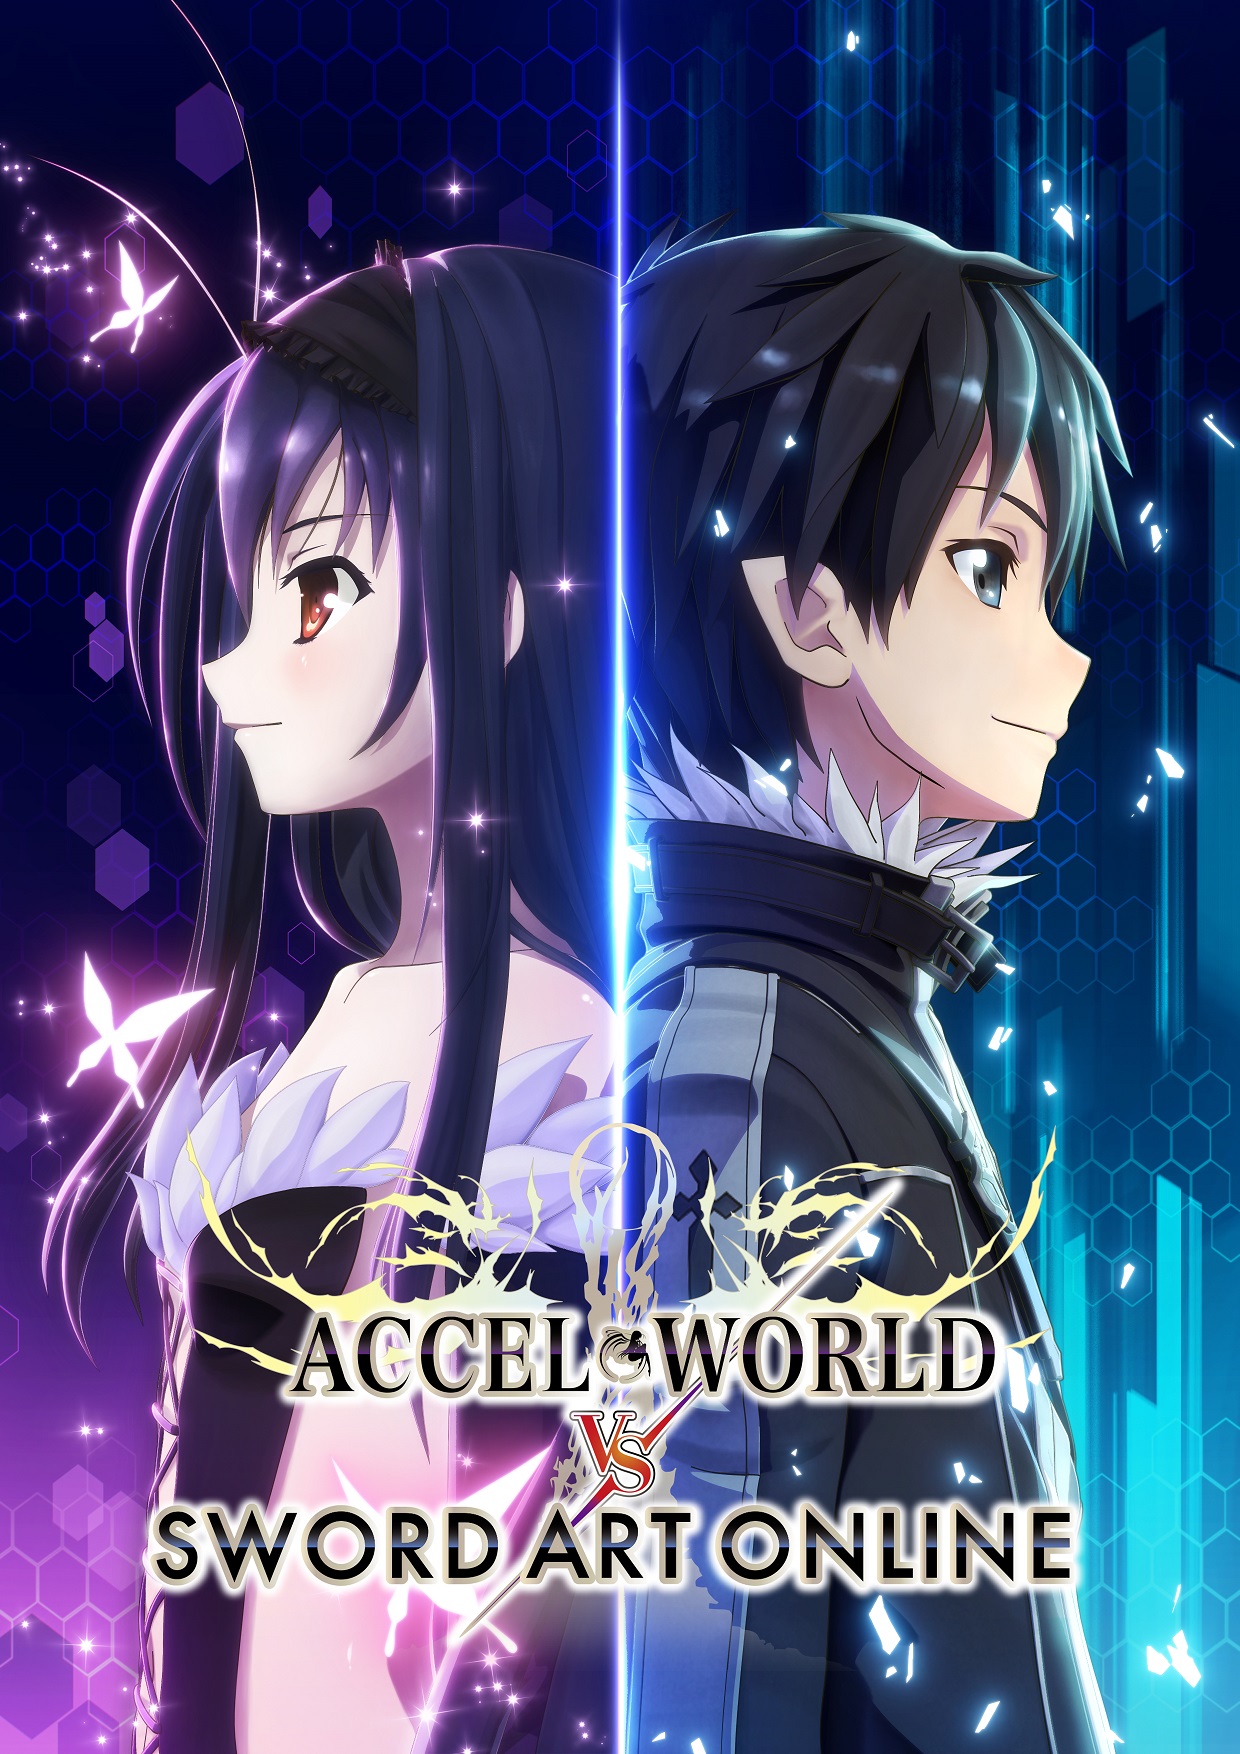 Bandai Namco anuncia Accel World VS. Sword Art Online para verano en PS4 y PS Vita, con textos en español